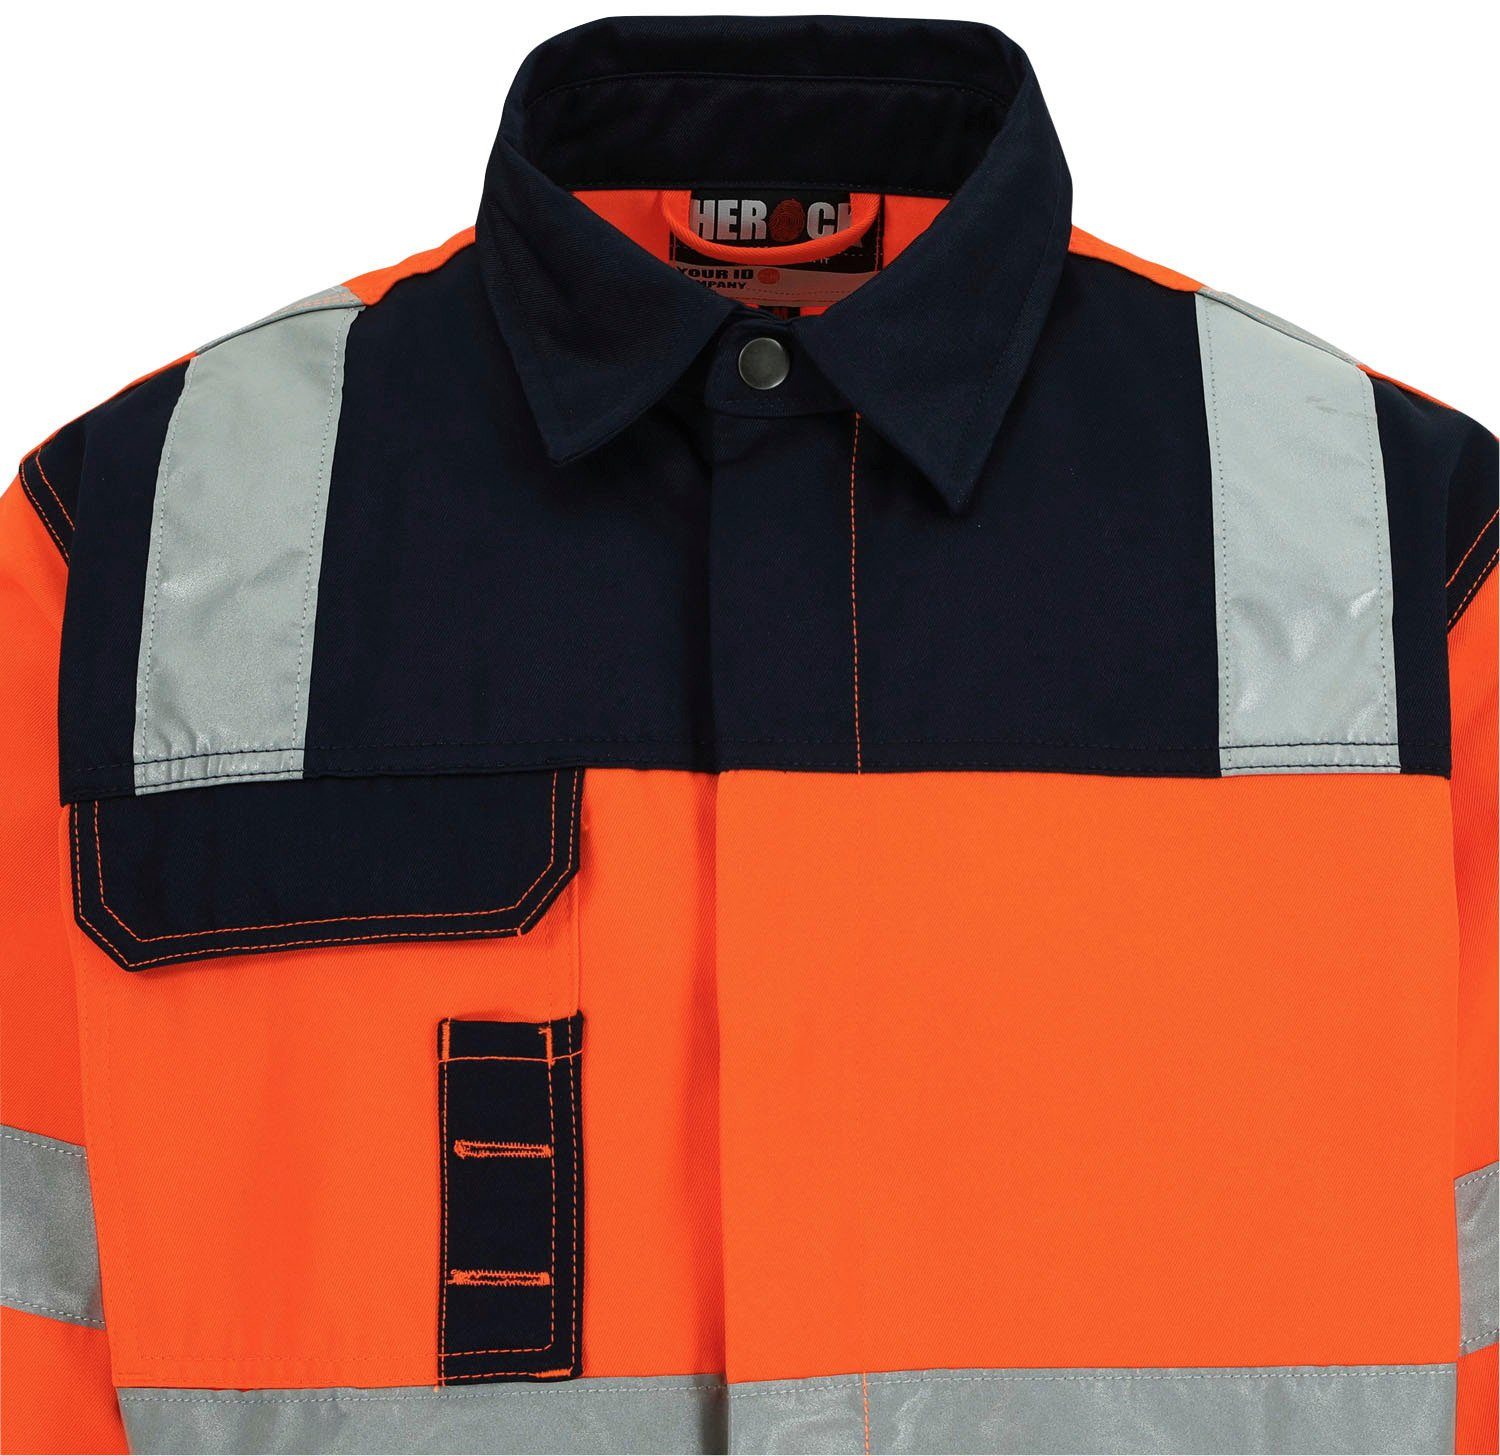 Hochwertig, Bündchen, Taschen, Hochsichtbar orange reflektierende Hydros Arbeitsjacke eintellbare Bänder Jacke 5cm Herock 5